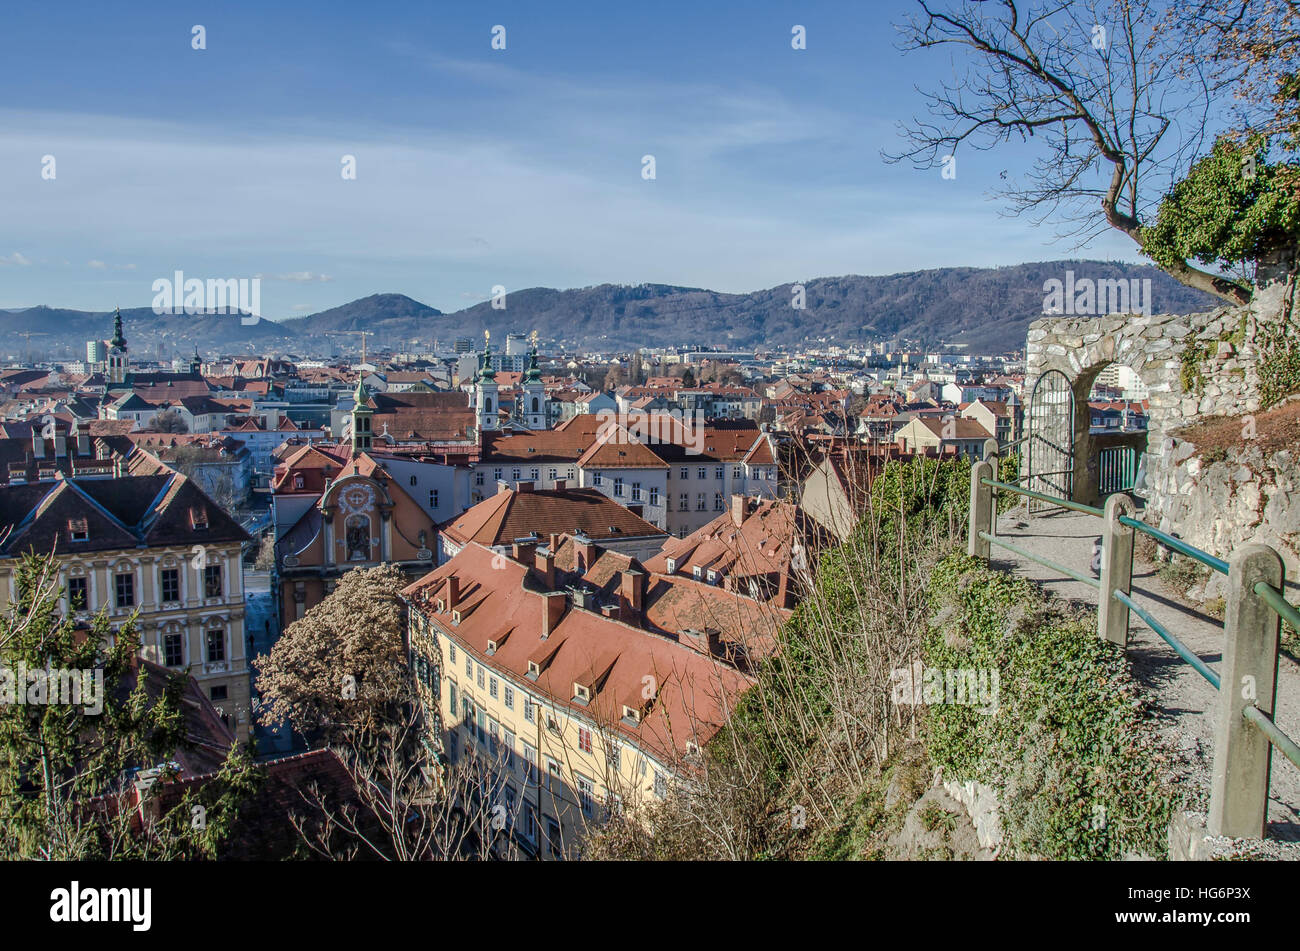 Grazer Schlossberg Schlossberg heute ein öffentlicher Park genießt einen herrlichen Blick über die Stadt. Stockfoto